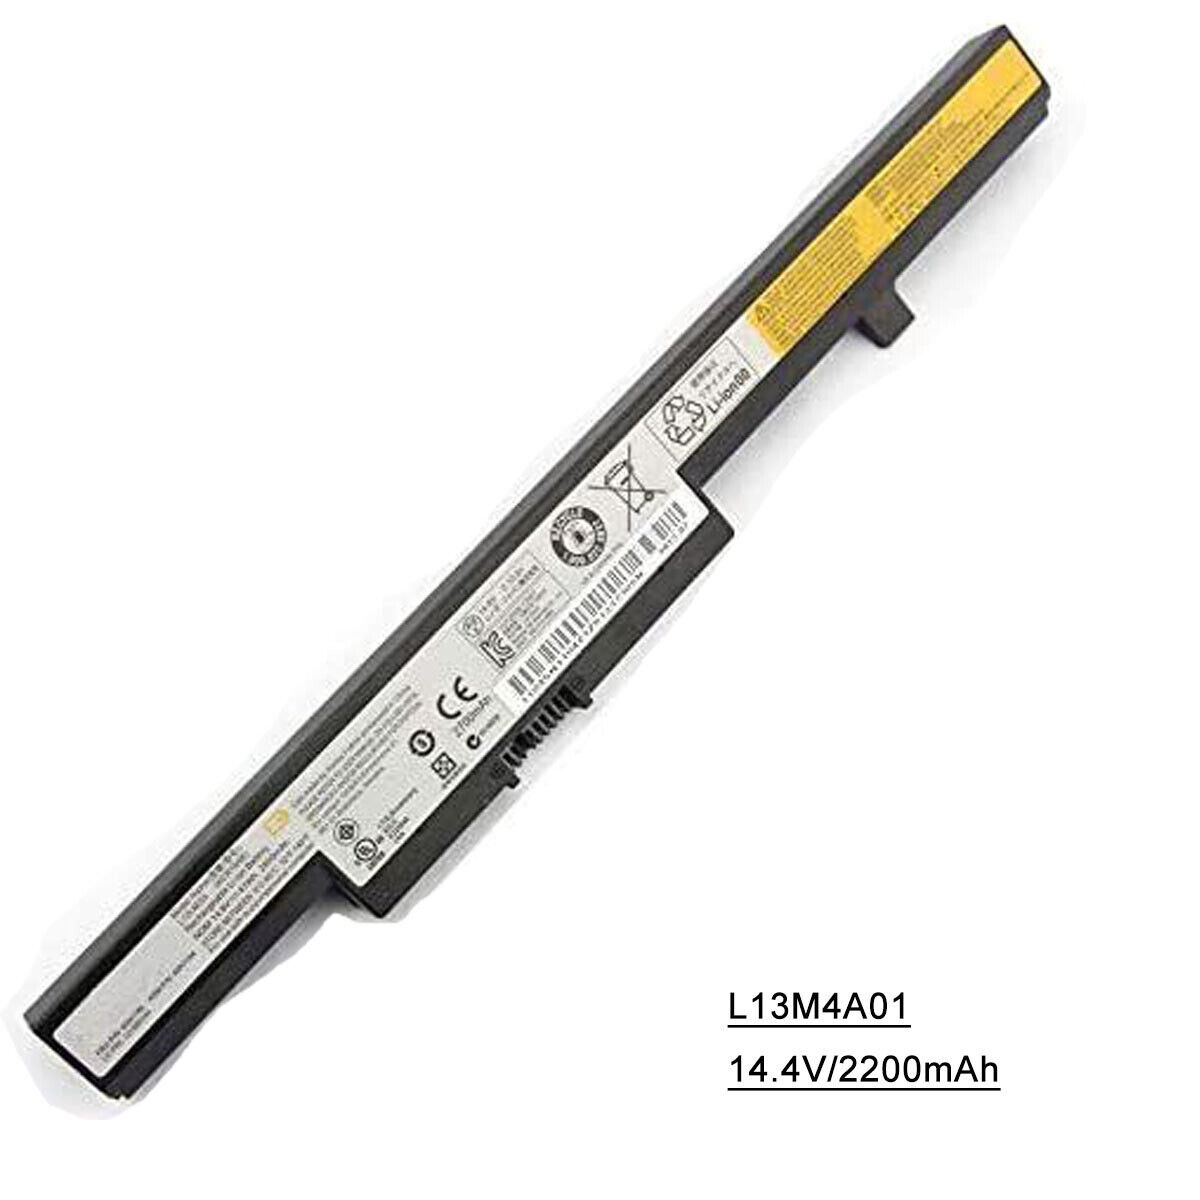 New L13M4A01 Battery For Lenovo B50-70 B40-70 B50-30 B50-45 B40-30 B50-80 B40-80